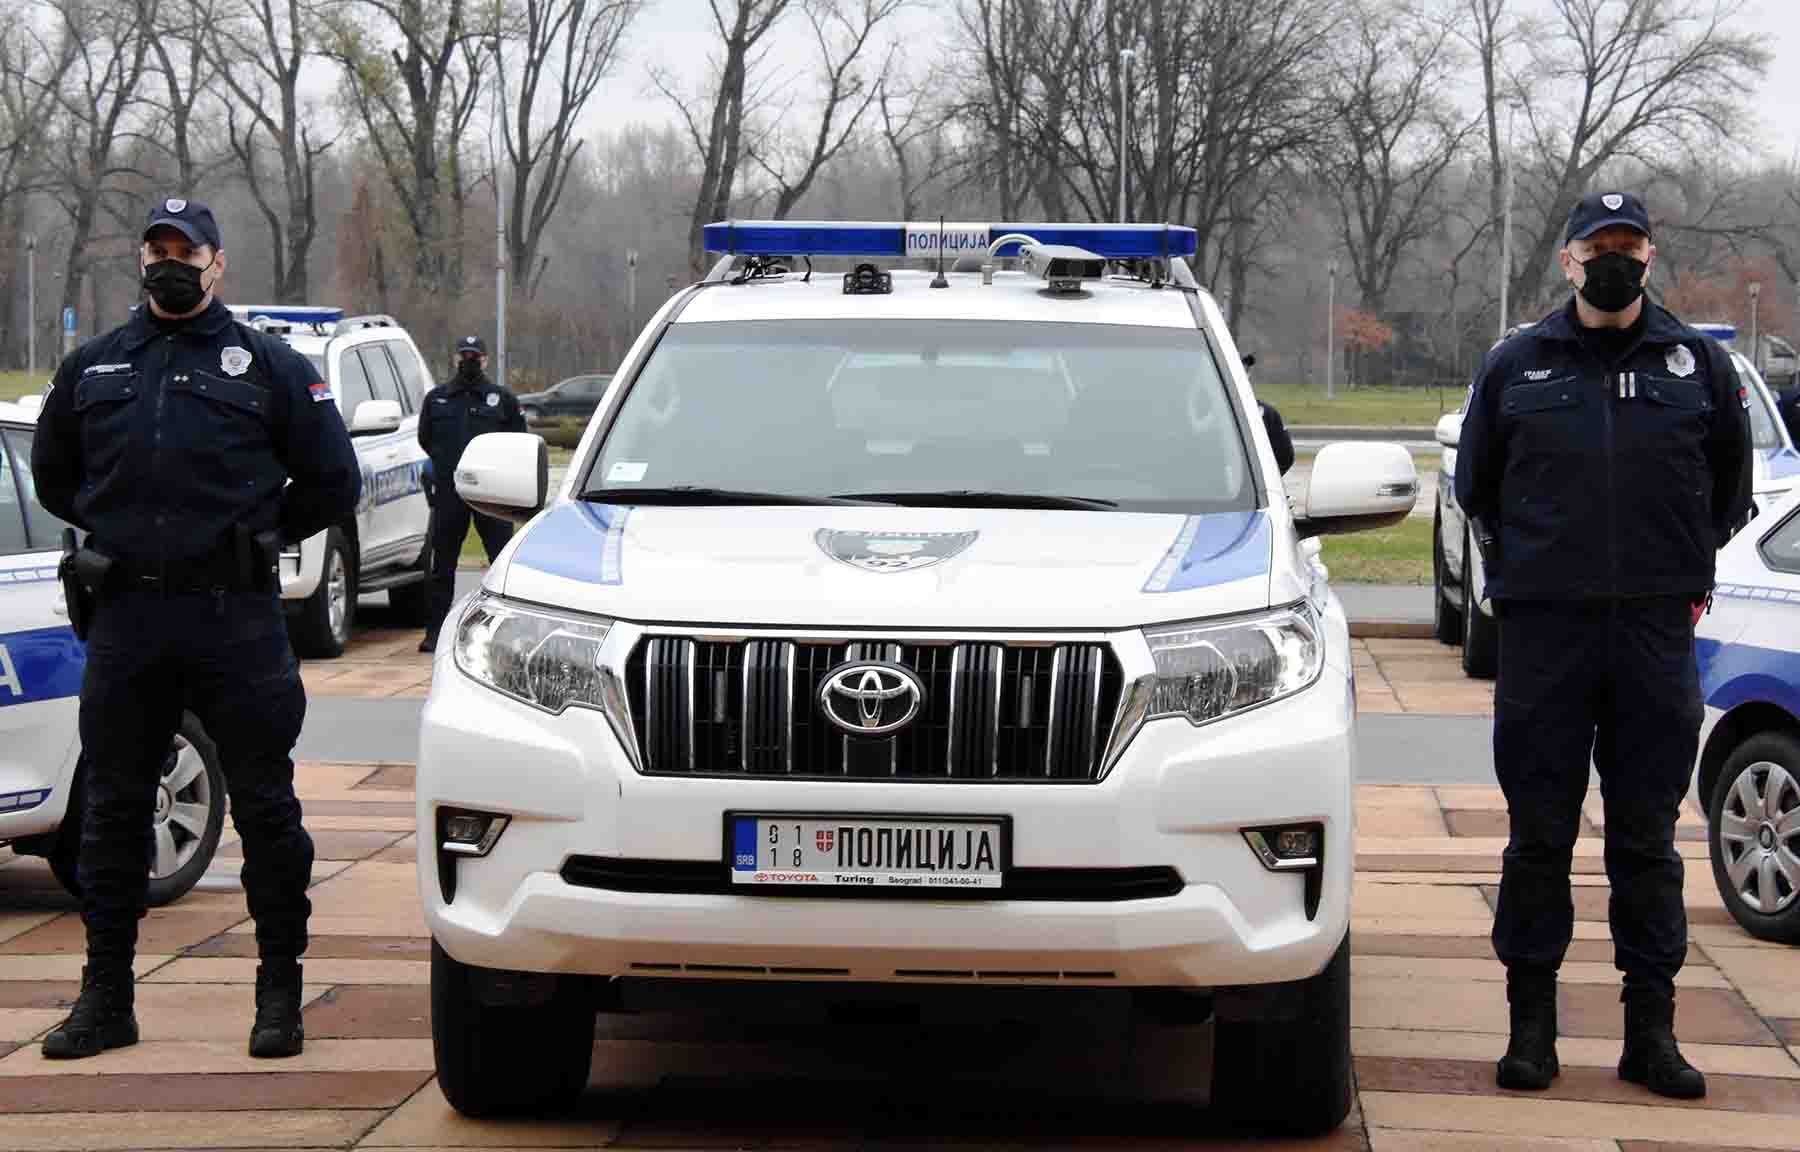 Полиција добила првих 15 возила опремљених савременом информационом опремом